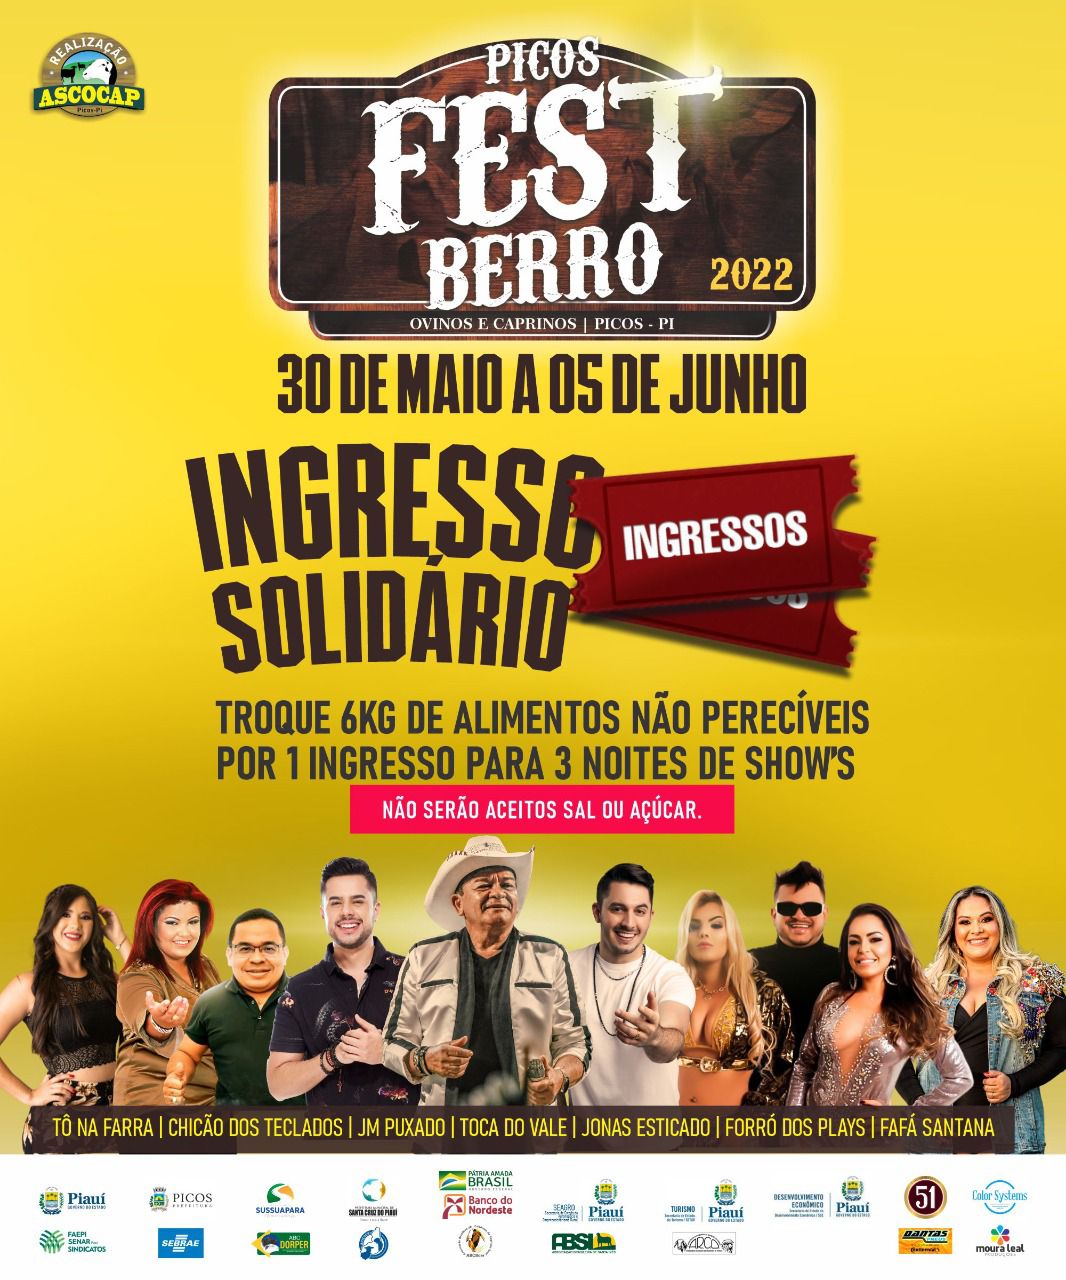 7ª edição do Picos Fest Berro conta com ingresso solidário; veja como adquirir